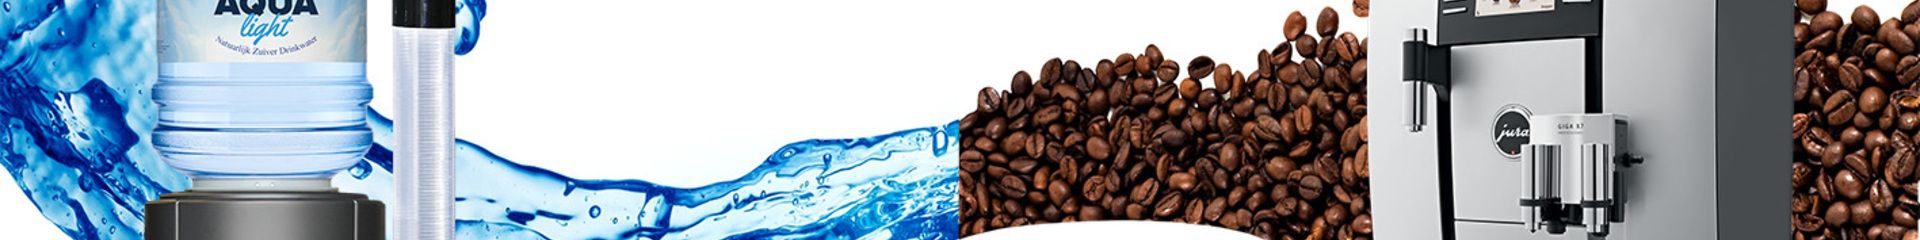 Water en koffie voor bedrijf & kantoor, Aqua & Beans